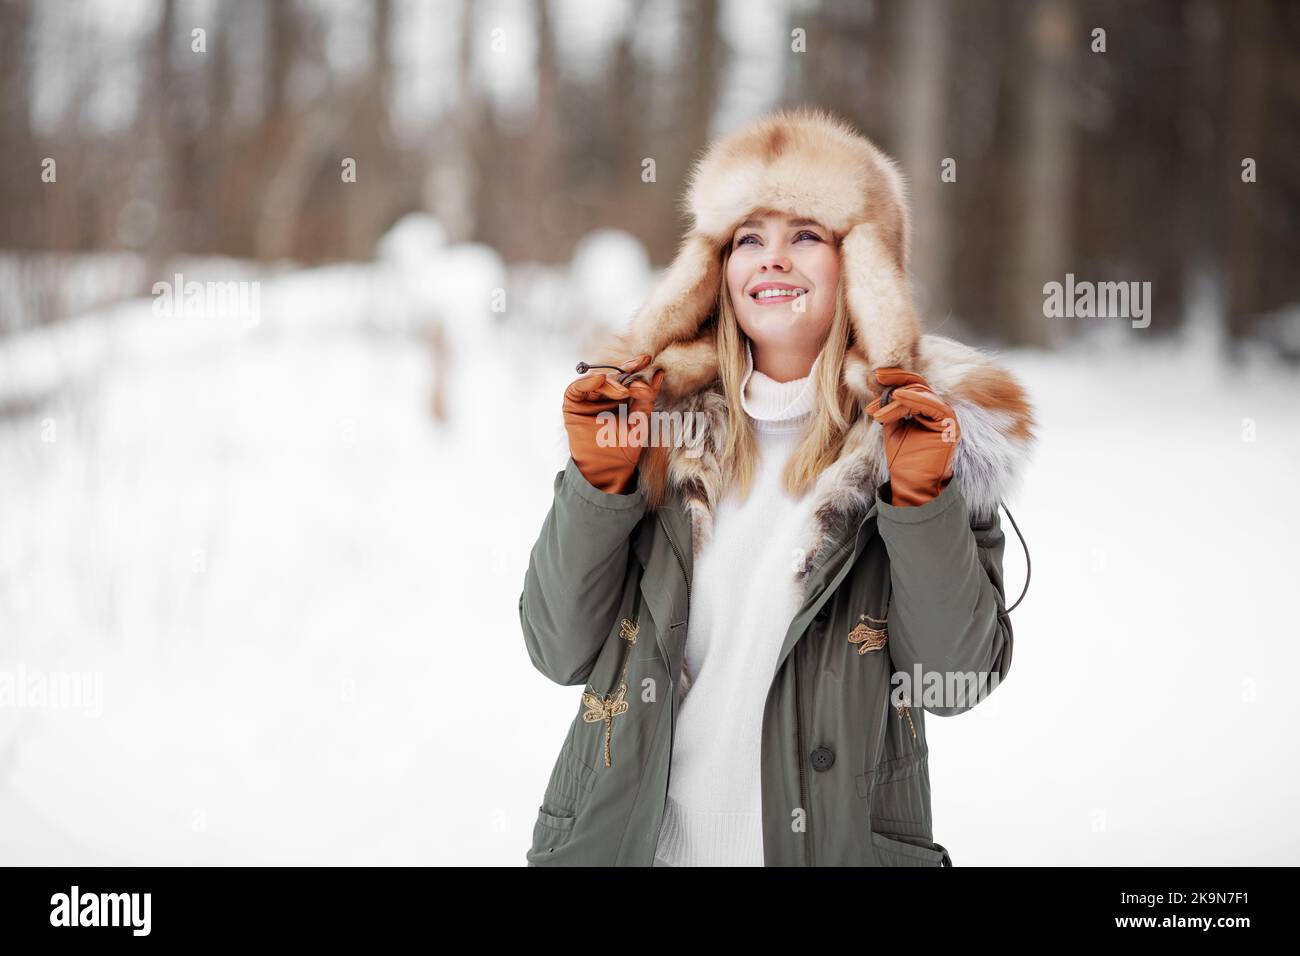 Bella donna sorridente ammirando la natura invernale nella foresta, indossando giacca di pelliccia kaki, cappello e guanti di pelle, ritratto accogliente su sfondo di neve Foto Stock